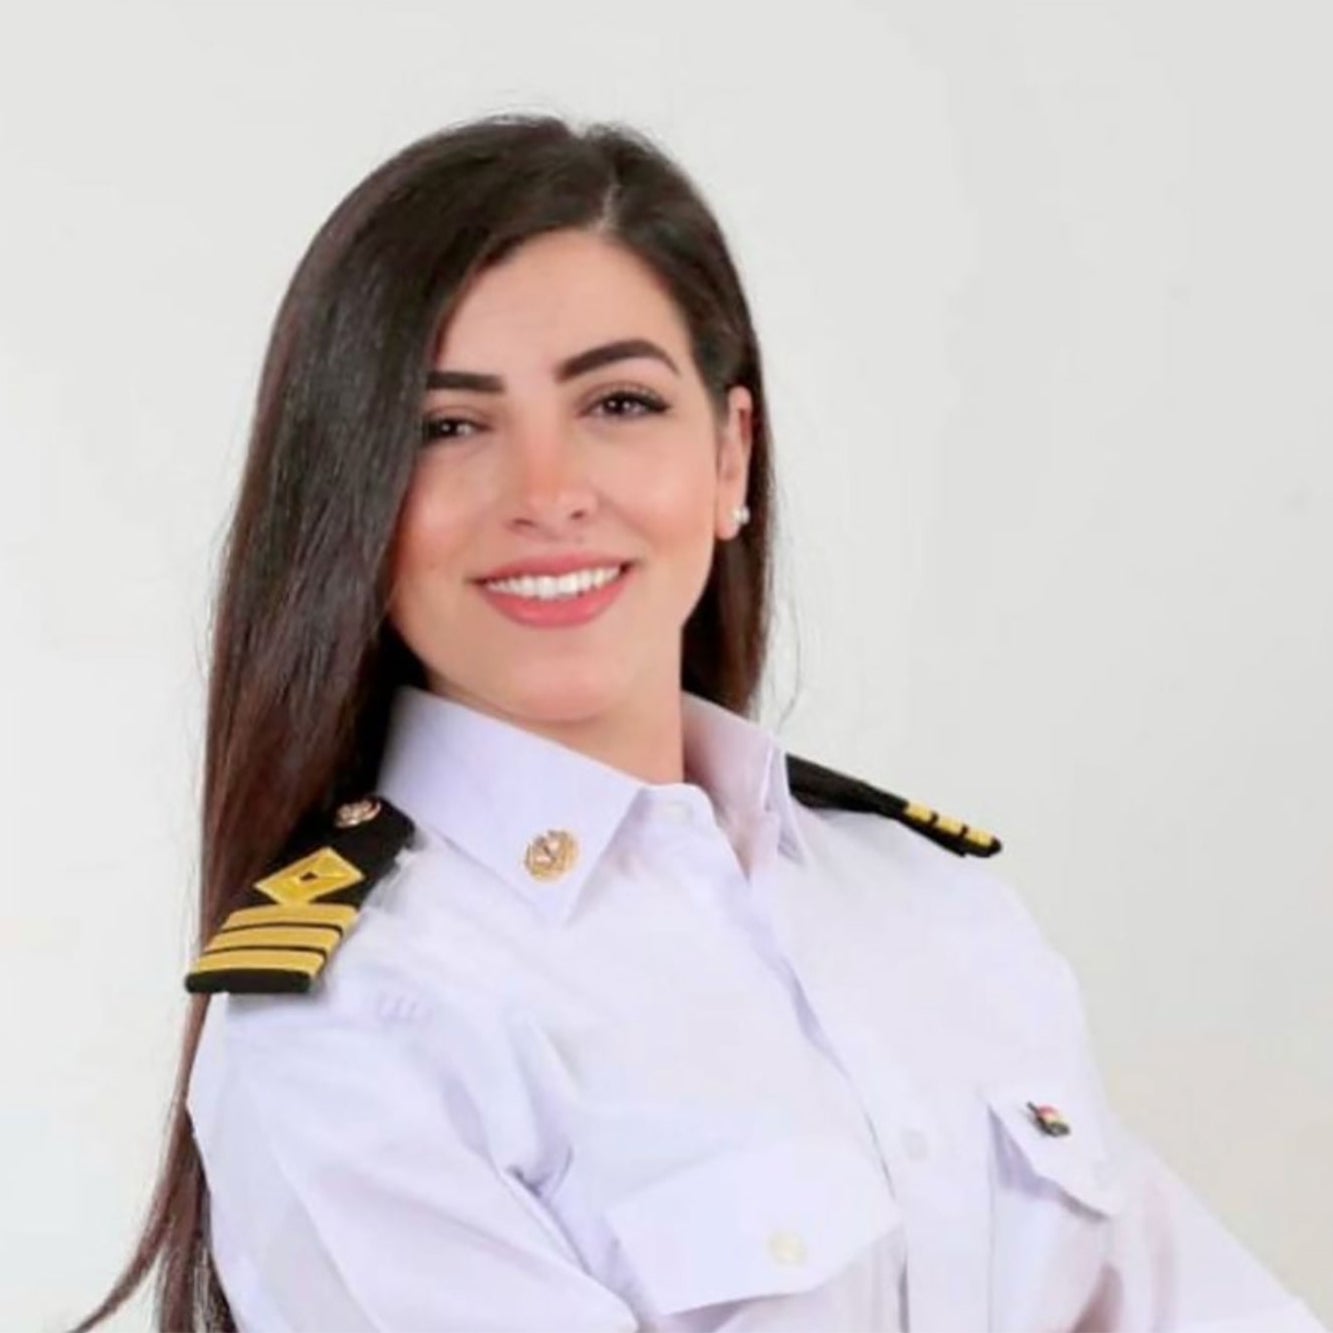 Marwa Elselehdar roept vrouwen in de maritieme sector op om positief te blijven. (Foto Maritime Executive)